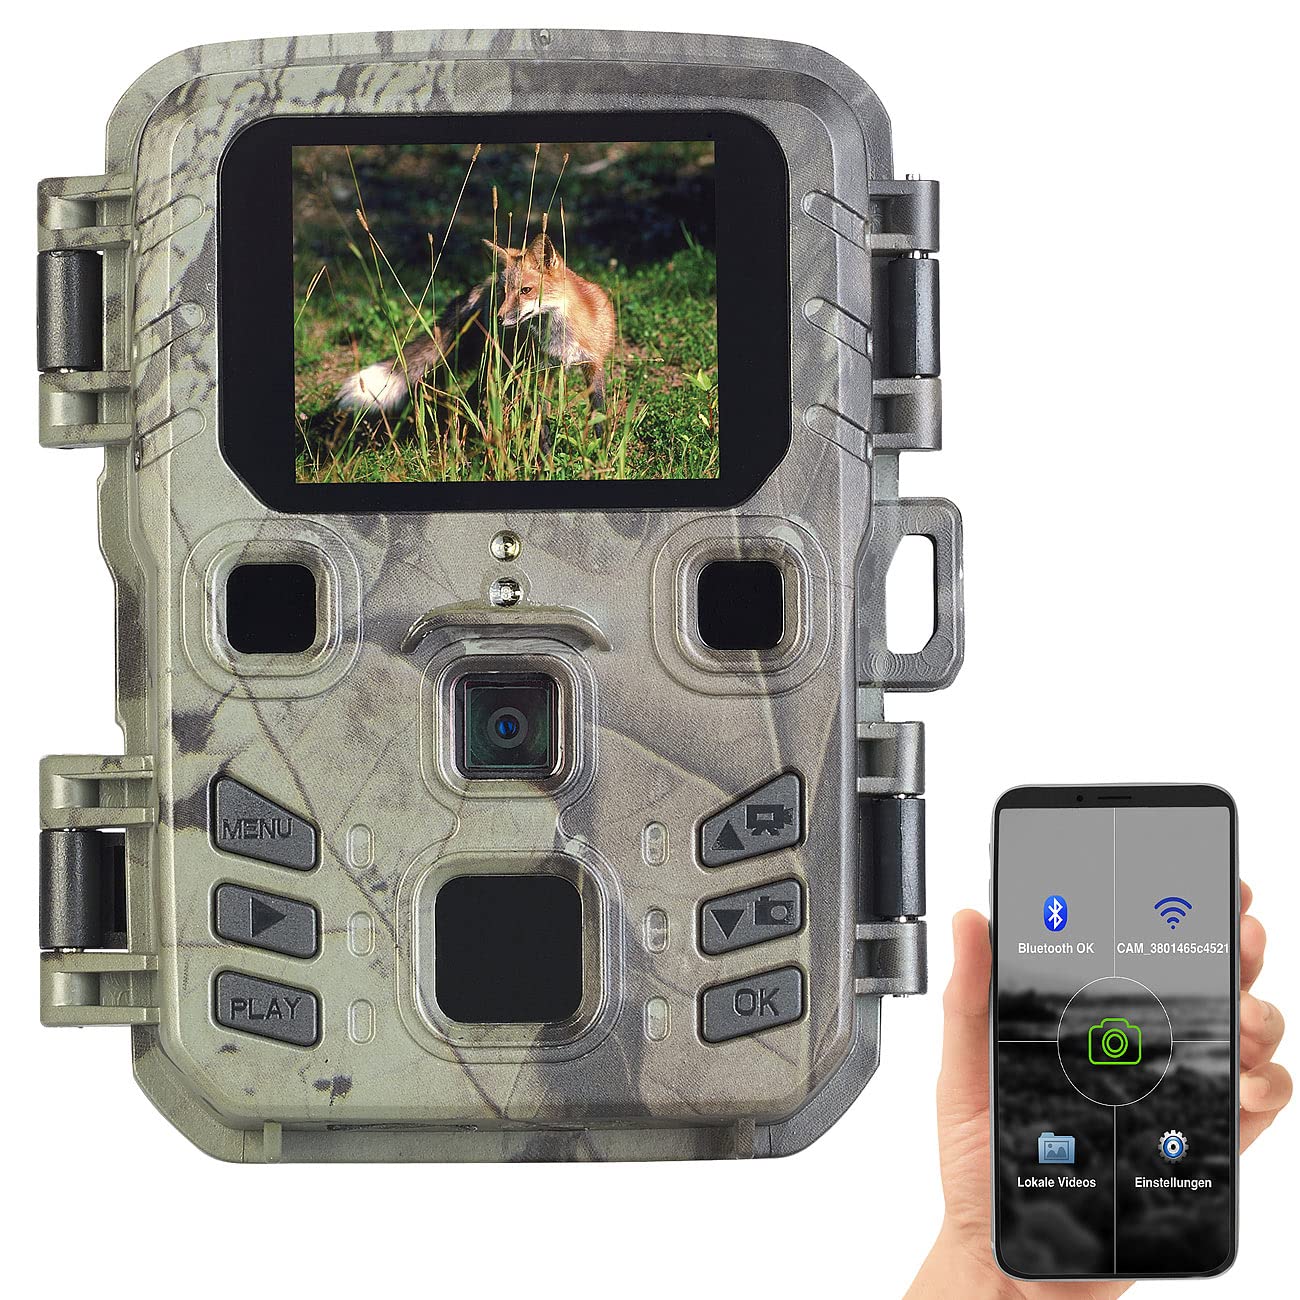 VisorTech Wildkamera WiFi: WLAN-2K-Wildkamera, PIR, Nachtsicht, 6 Monate Stand-by, App, IPX5 (Wildkameras mit App, WLAN Wildkameras, Camera SD Karte)